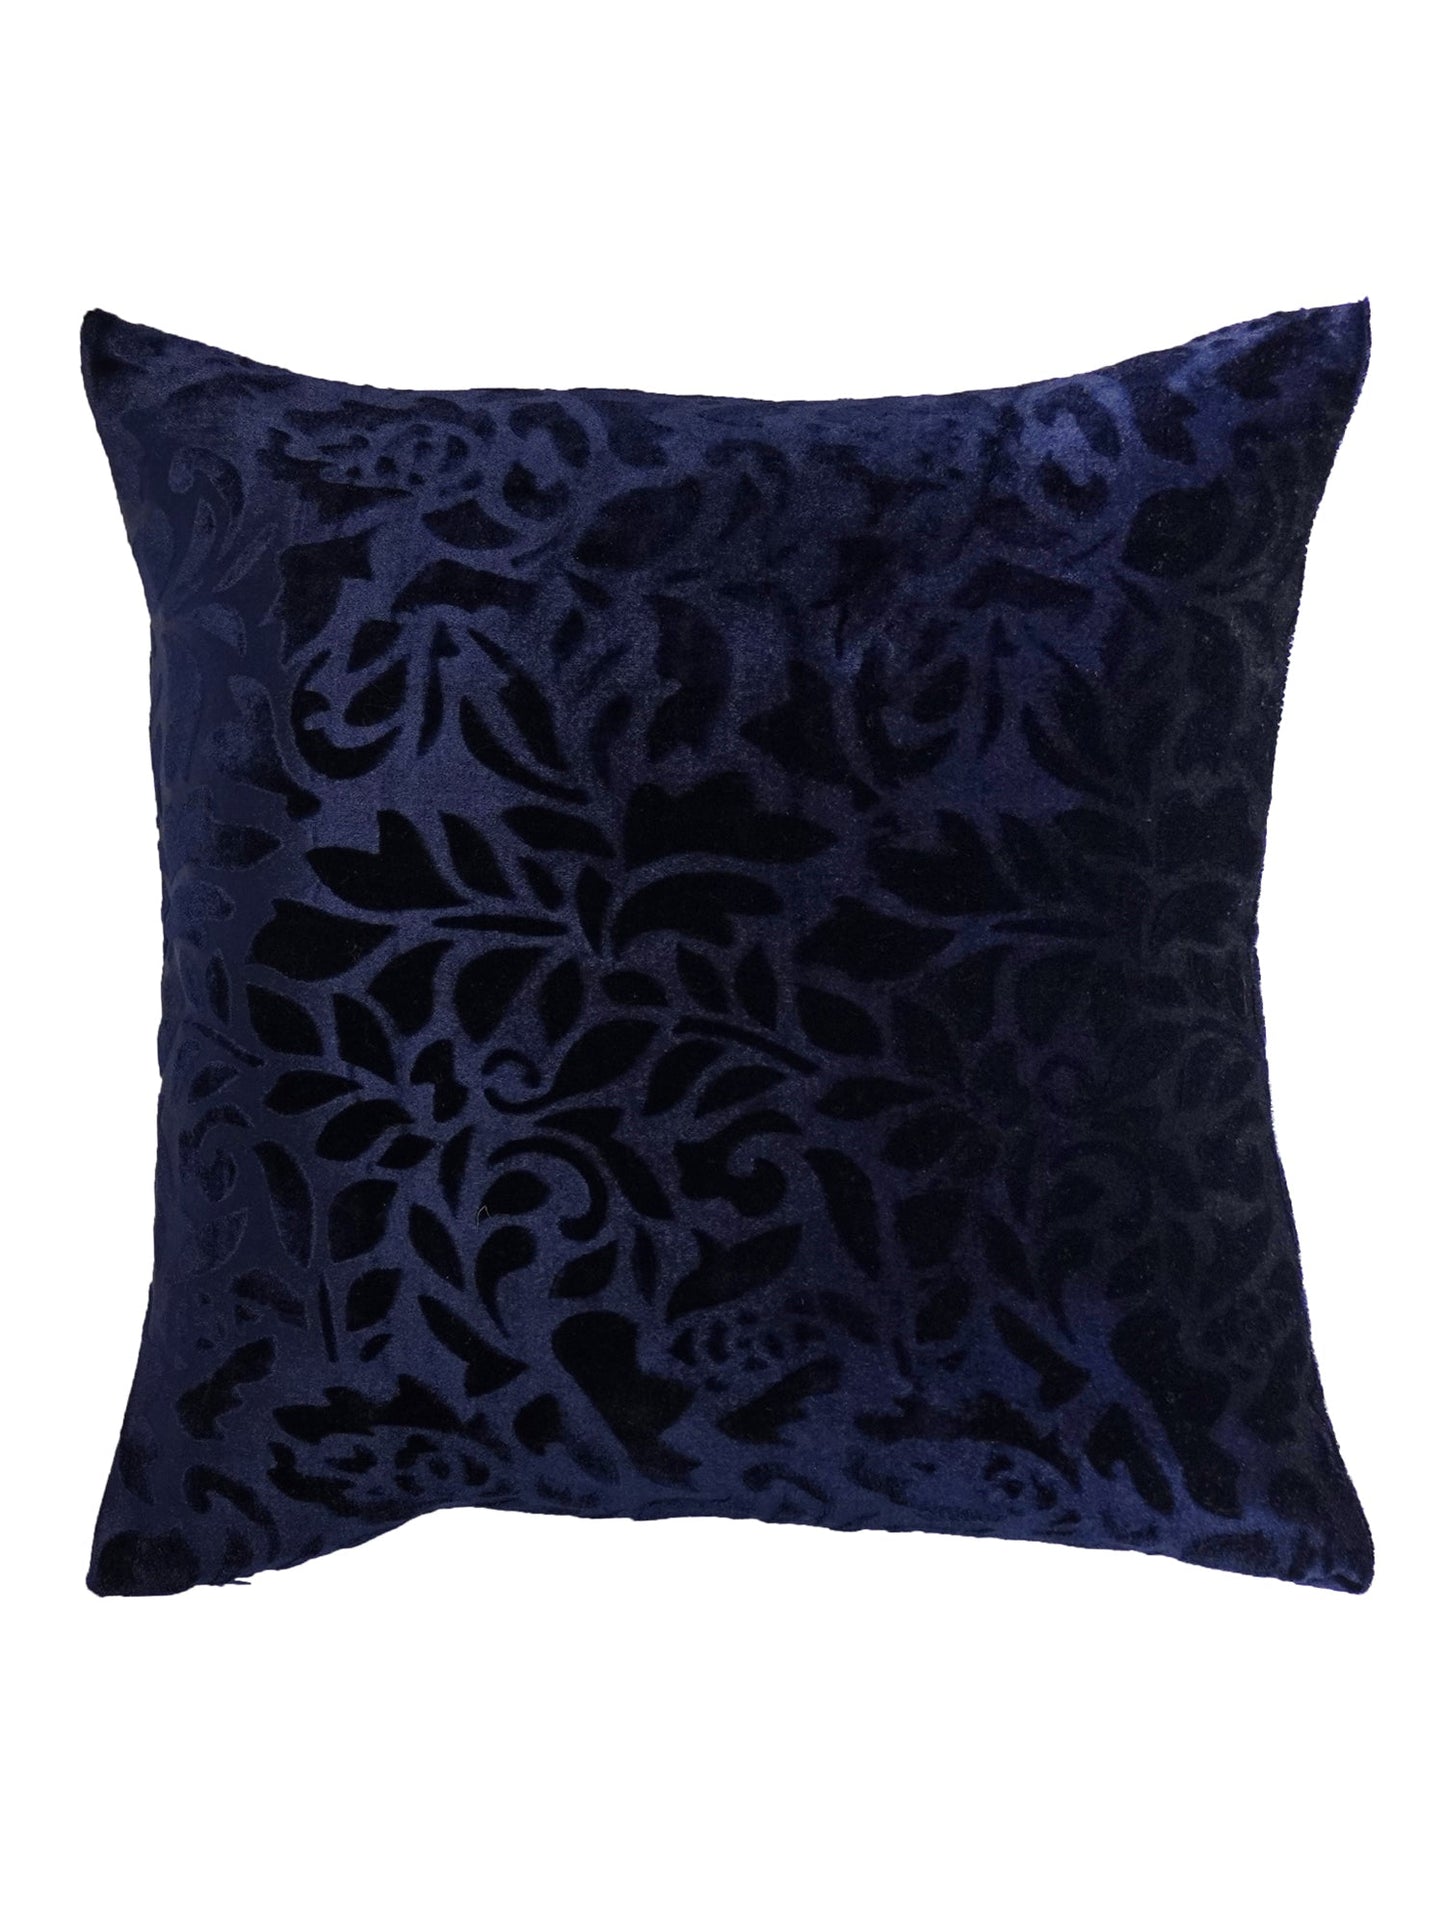 Cushion Cover Velvet Floral Blue - 16" X 16"